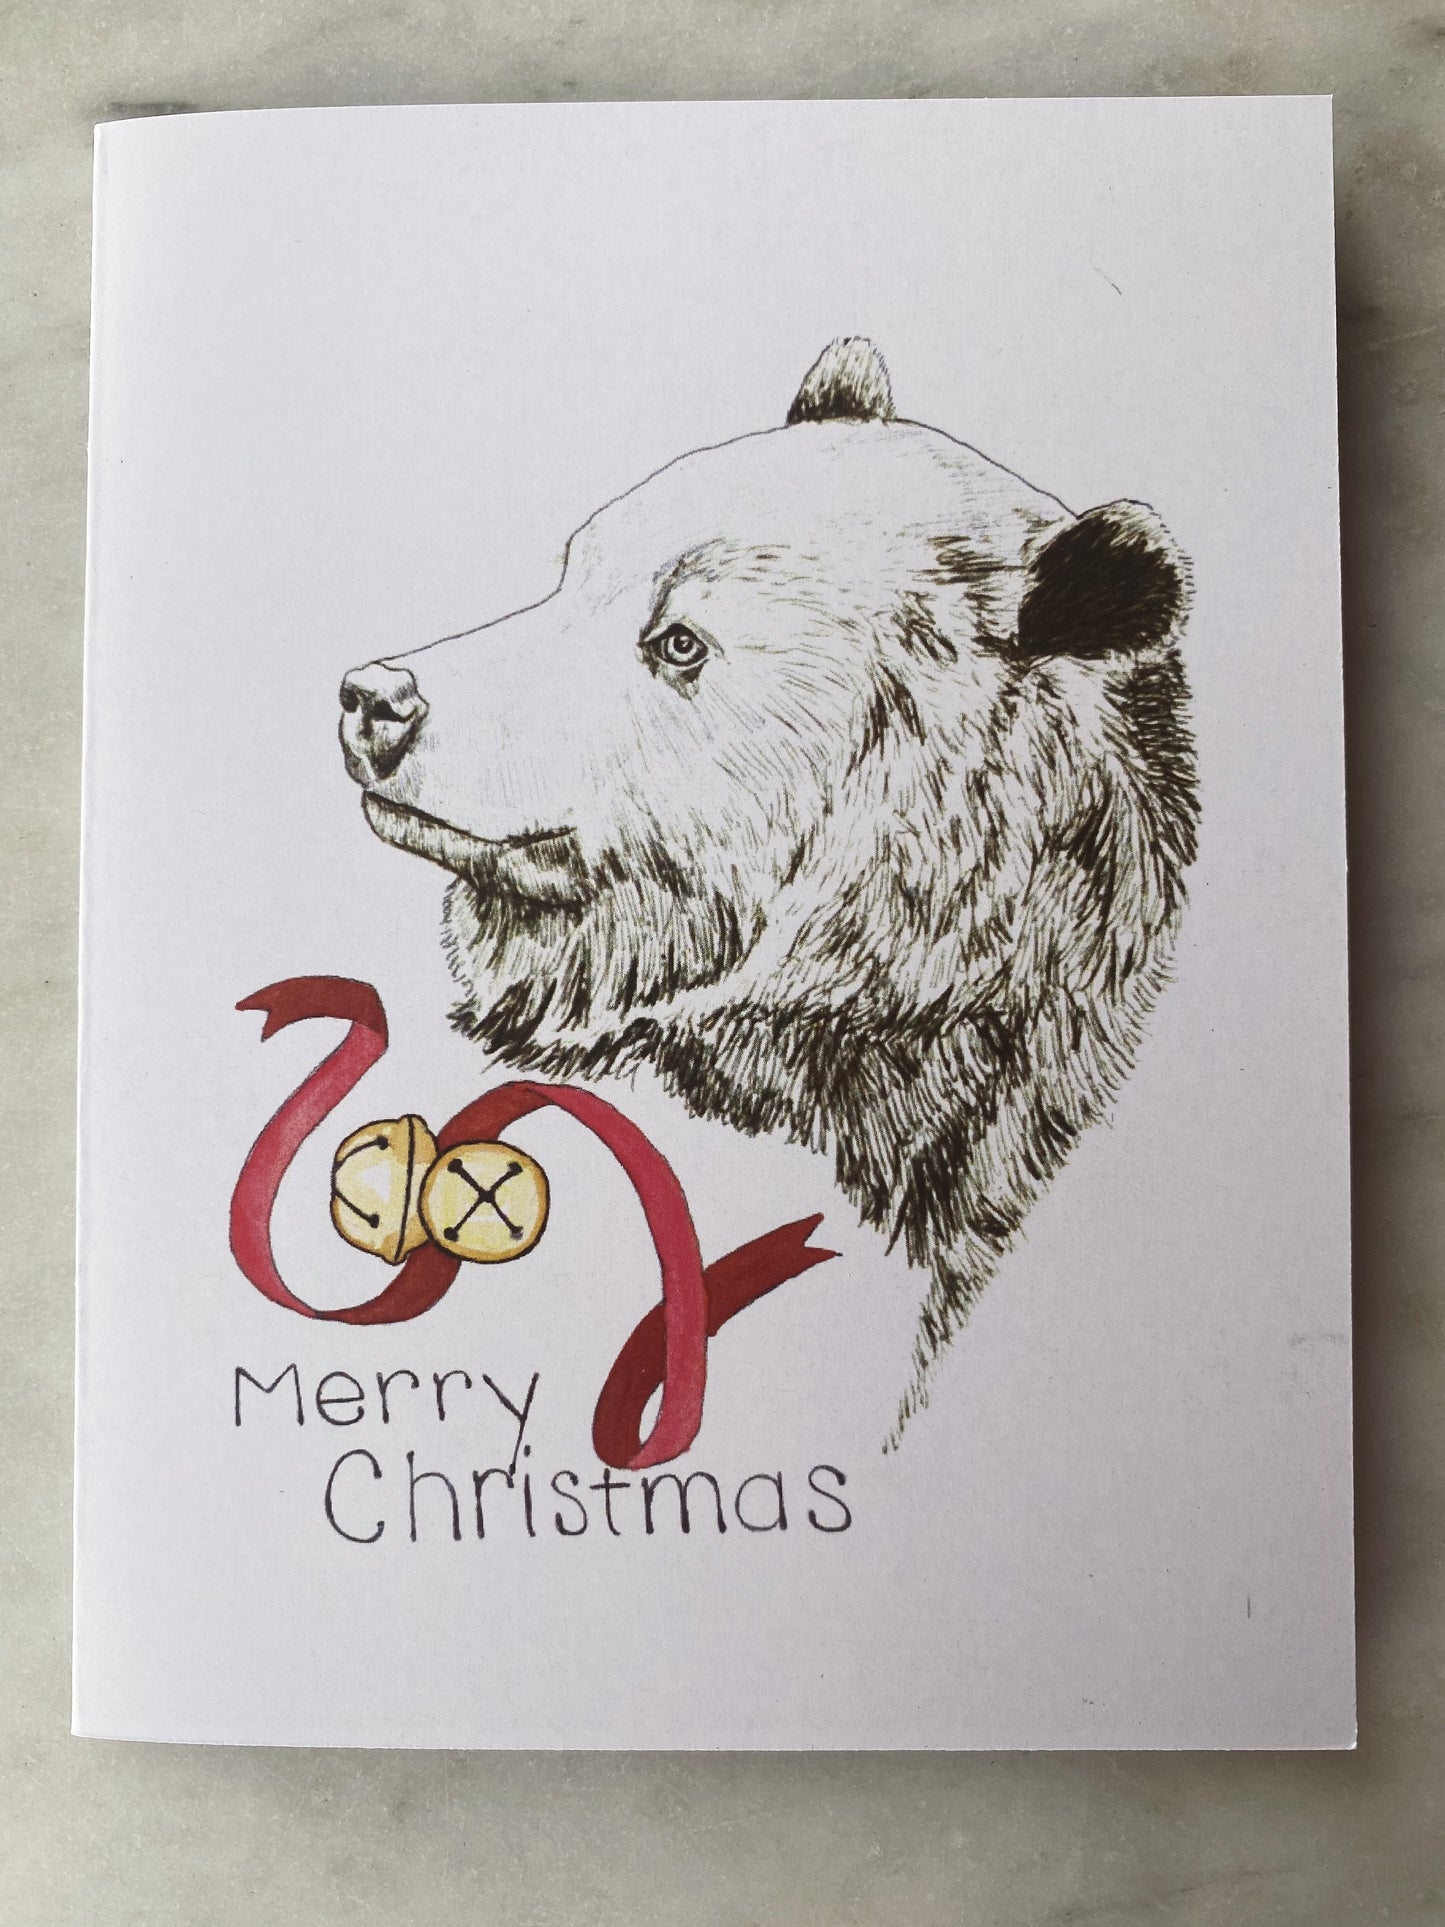 Christmas Cards - Original Art Prints